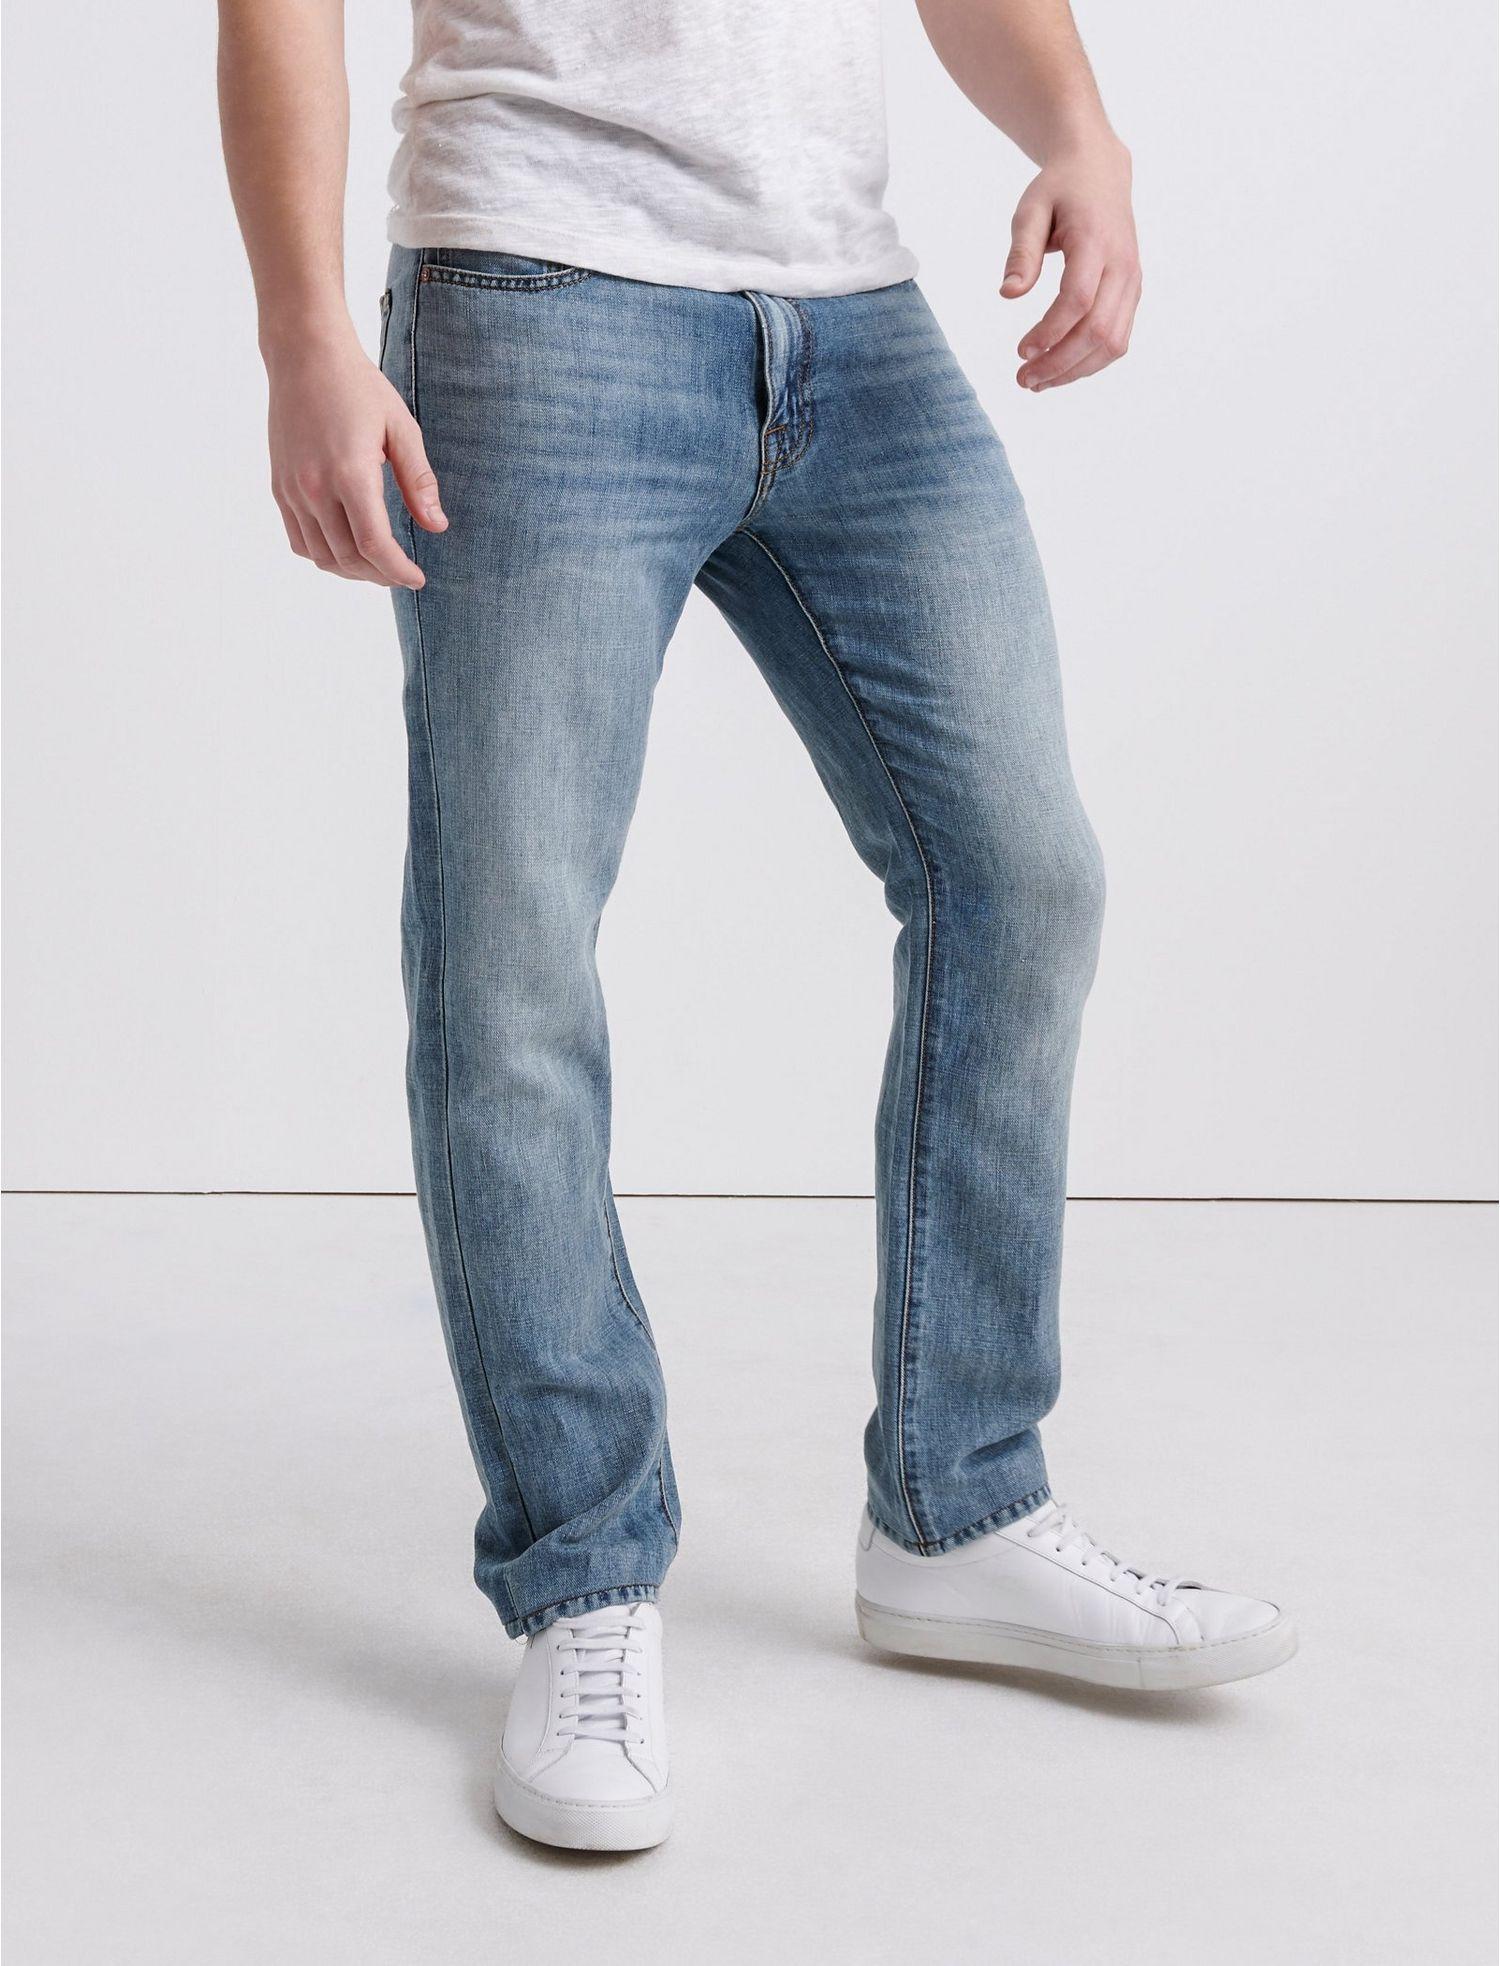 Lucky Brand Denim 410 Athletic Slim Jean in Blue for Men - Lyst